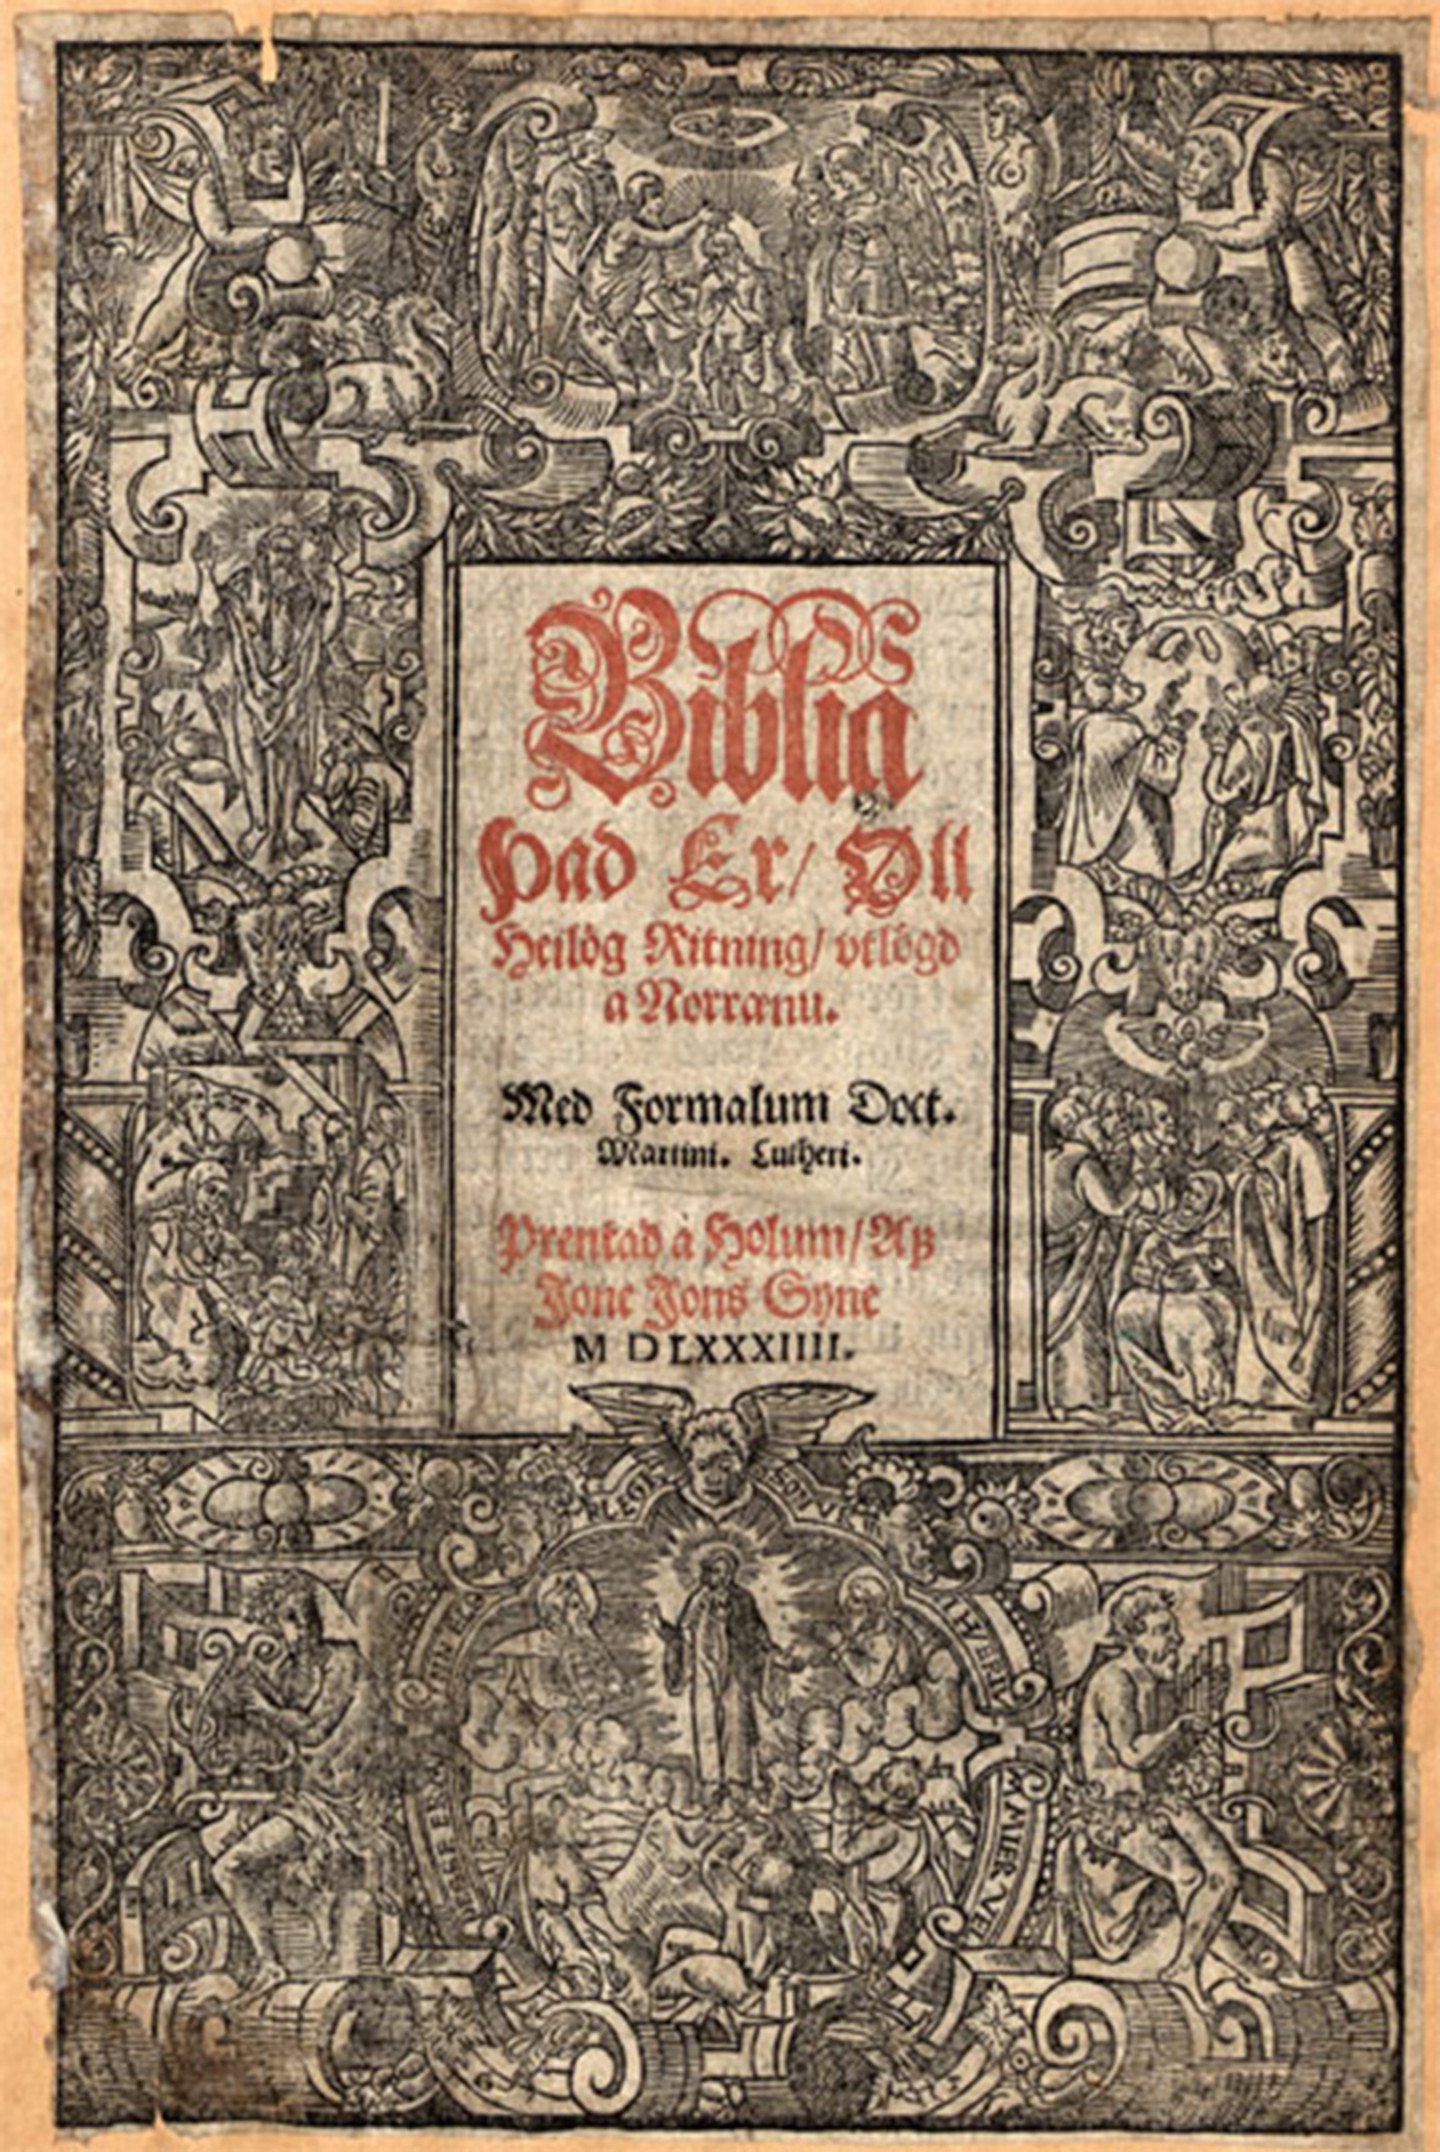 Frontseite einer Bibel aus dem Jahr 1584 umrahmt von religiösen Symbolen und Zeichnungen.